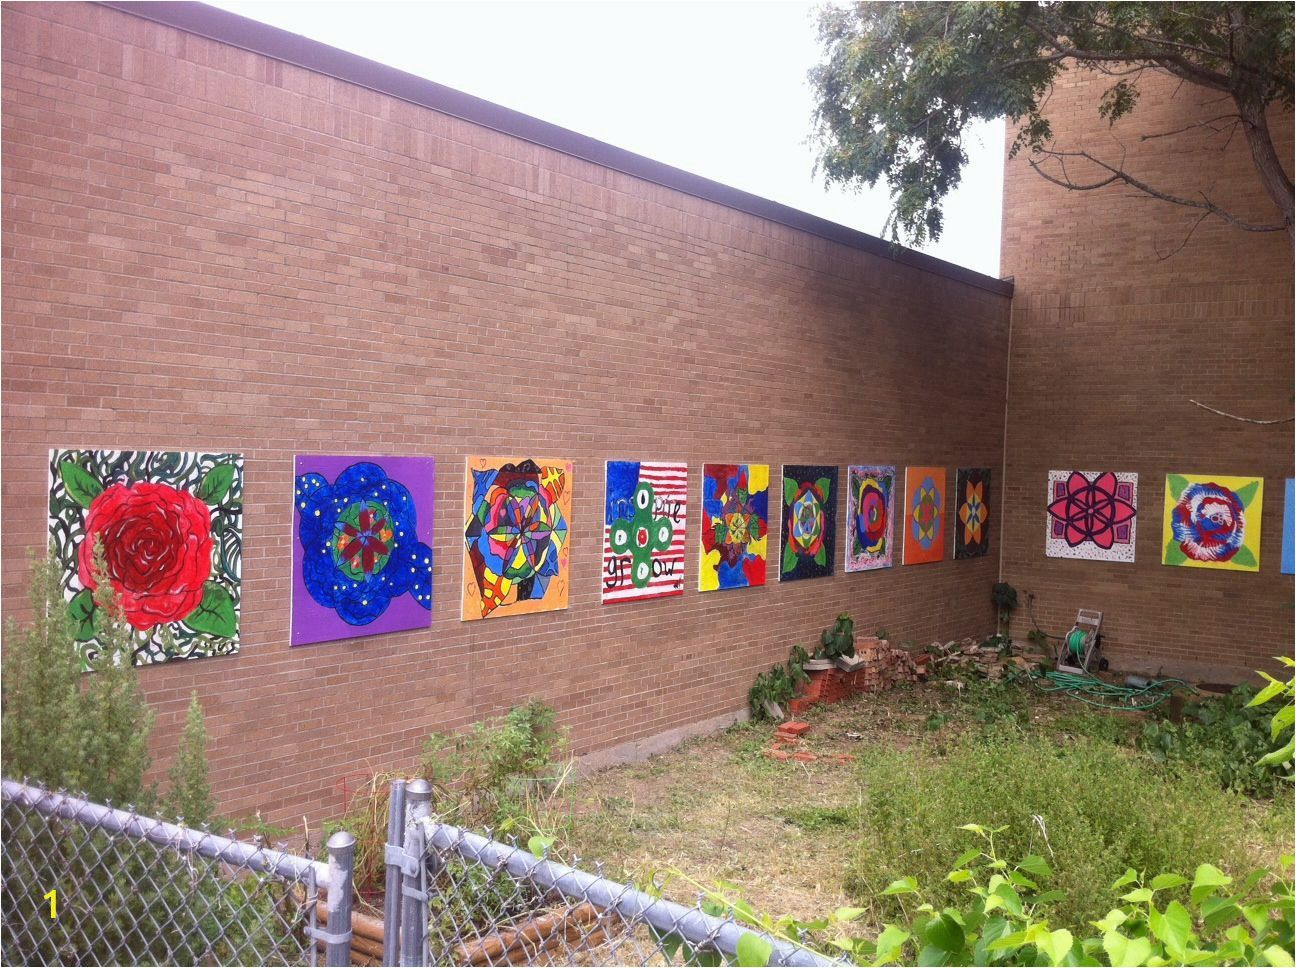 Outdoor Wall Murals for Schools School Garden Mural